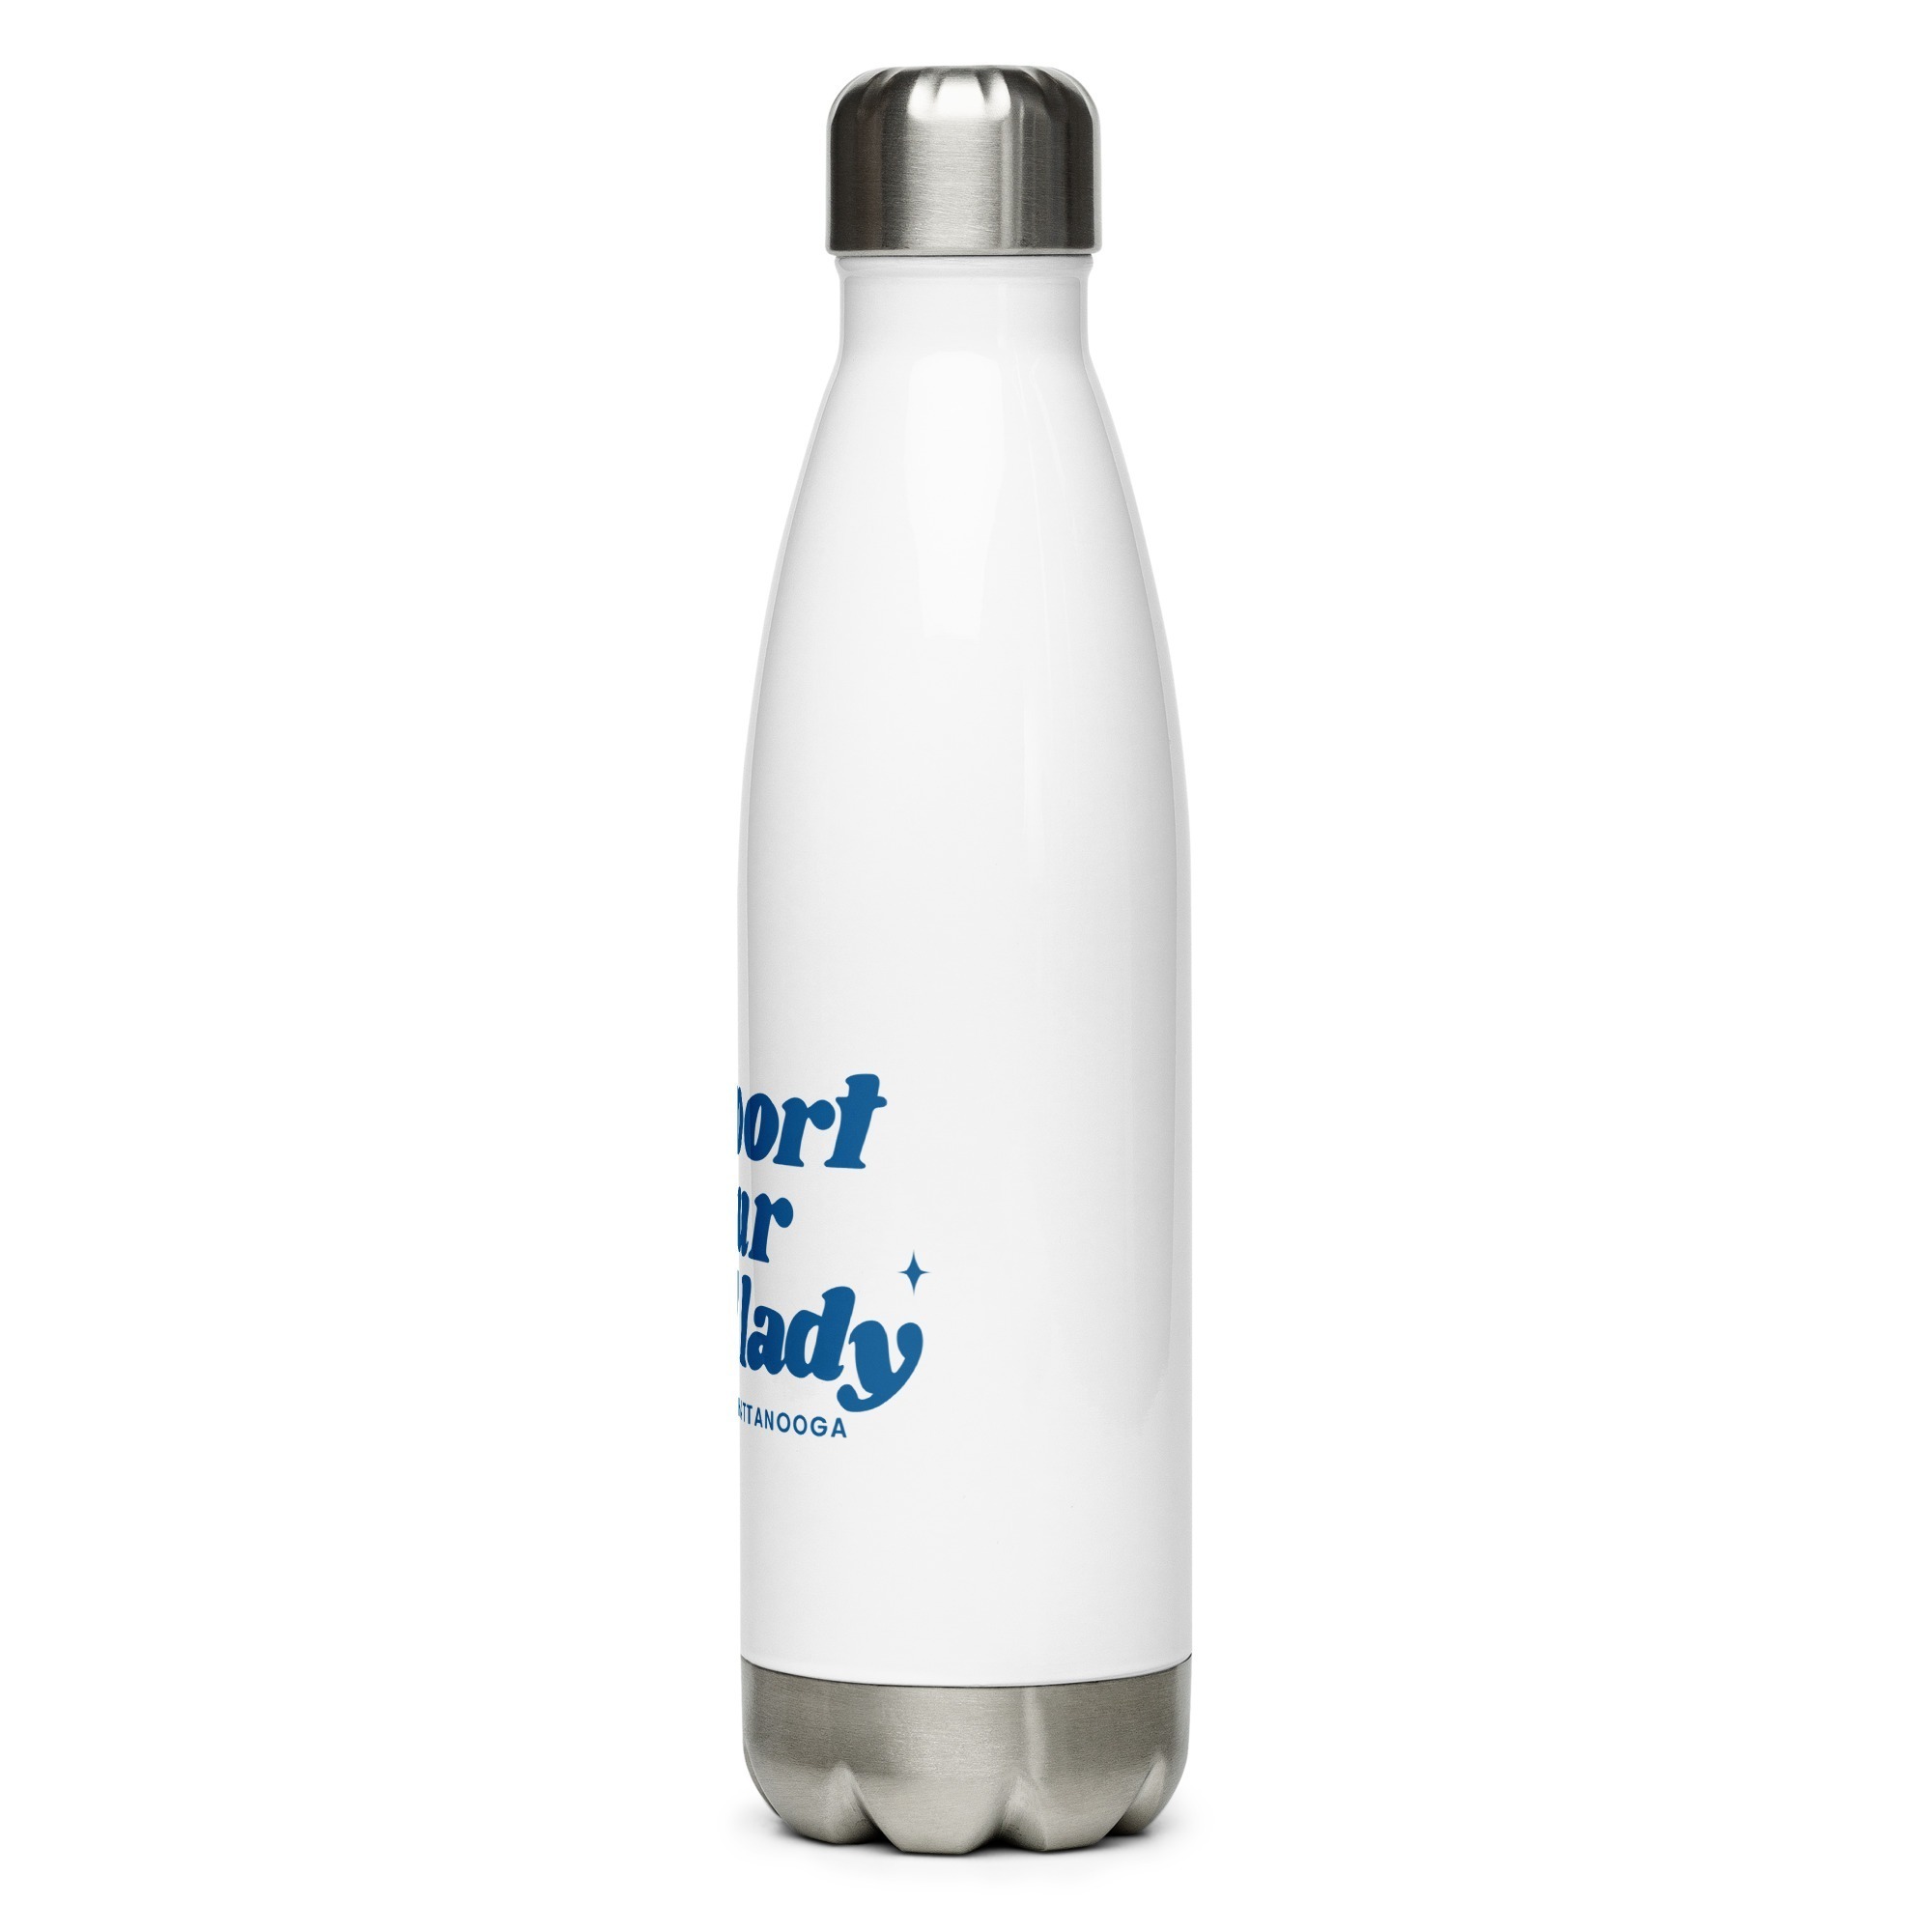 https://www.astepaheadchattanooga.org/wp-content/uploads/2022/06/stainless-steel-water-bottle-white-17oz-left-62ab9a33da750.jpg